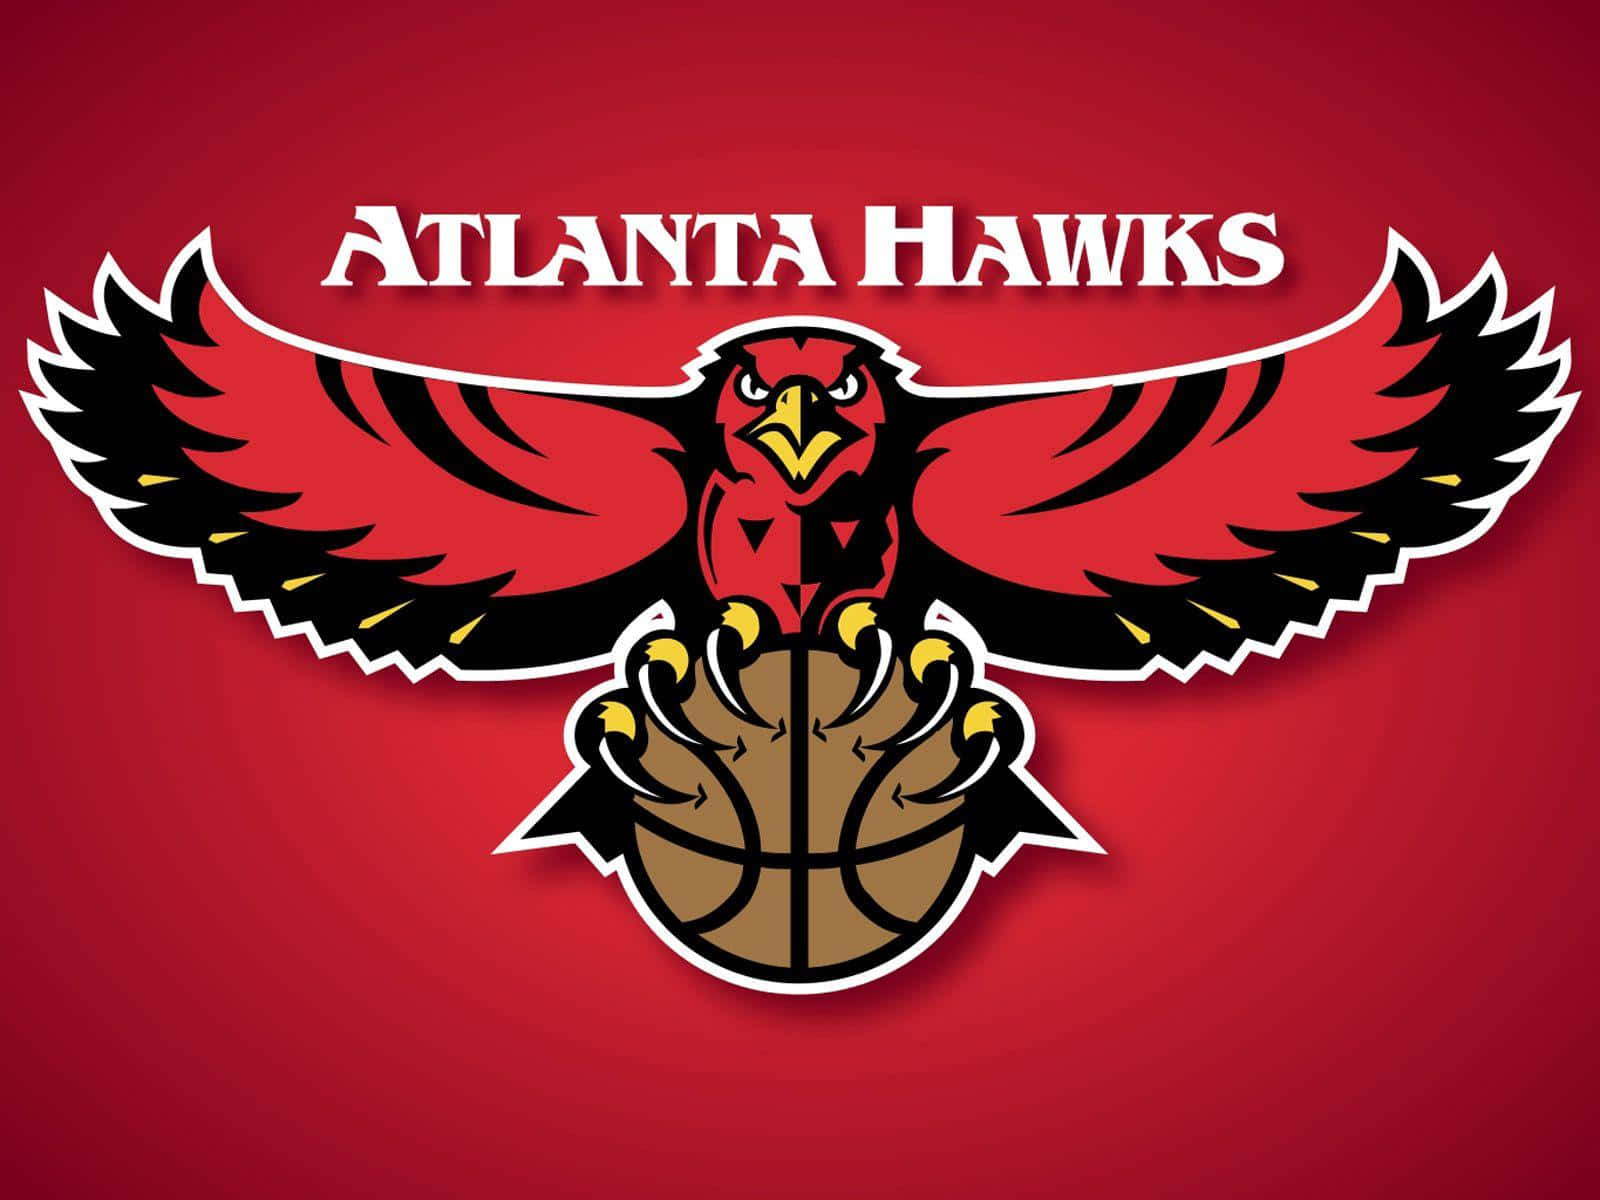 Visaditt Stöd För Atlanta Hawks!